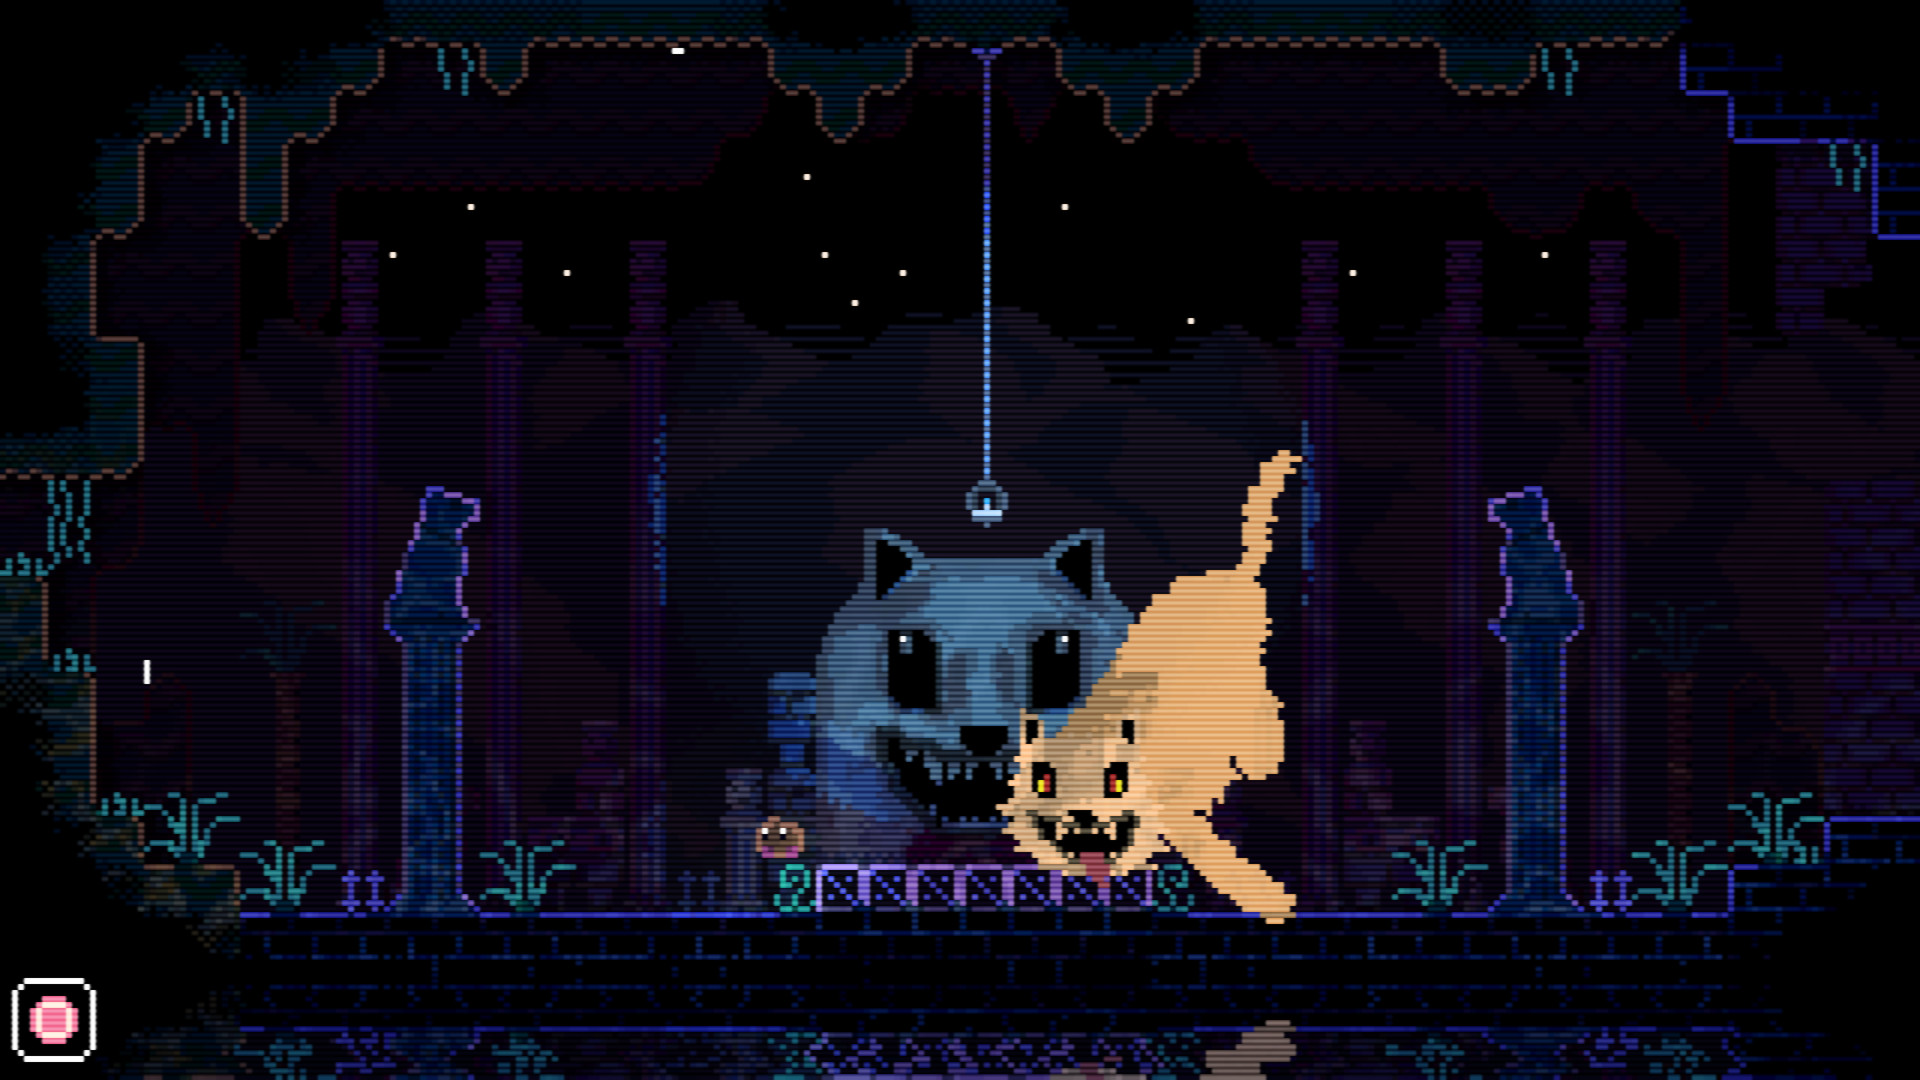 Una schermata pixelata del gioco Animal Well, con un gatto spettrale che appare sulla mappa.